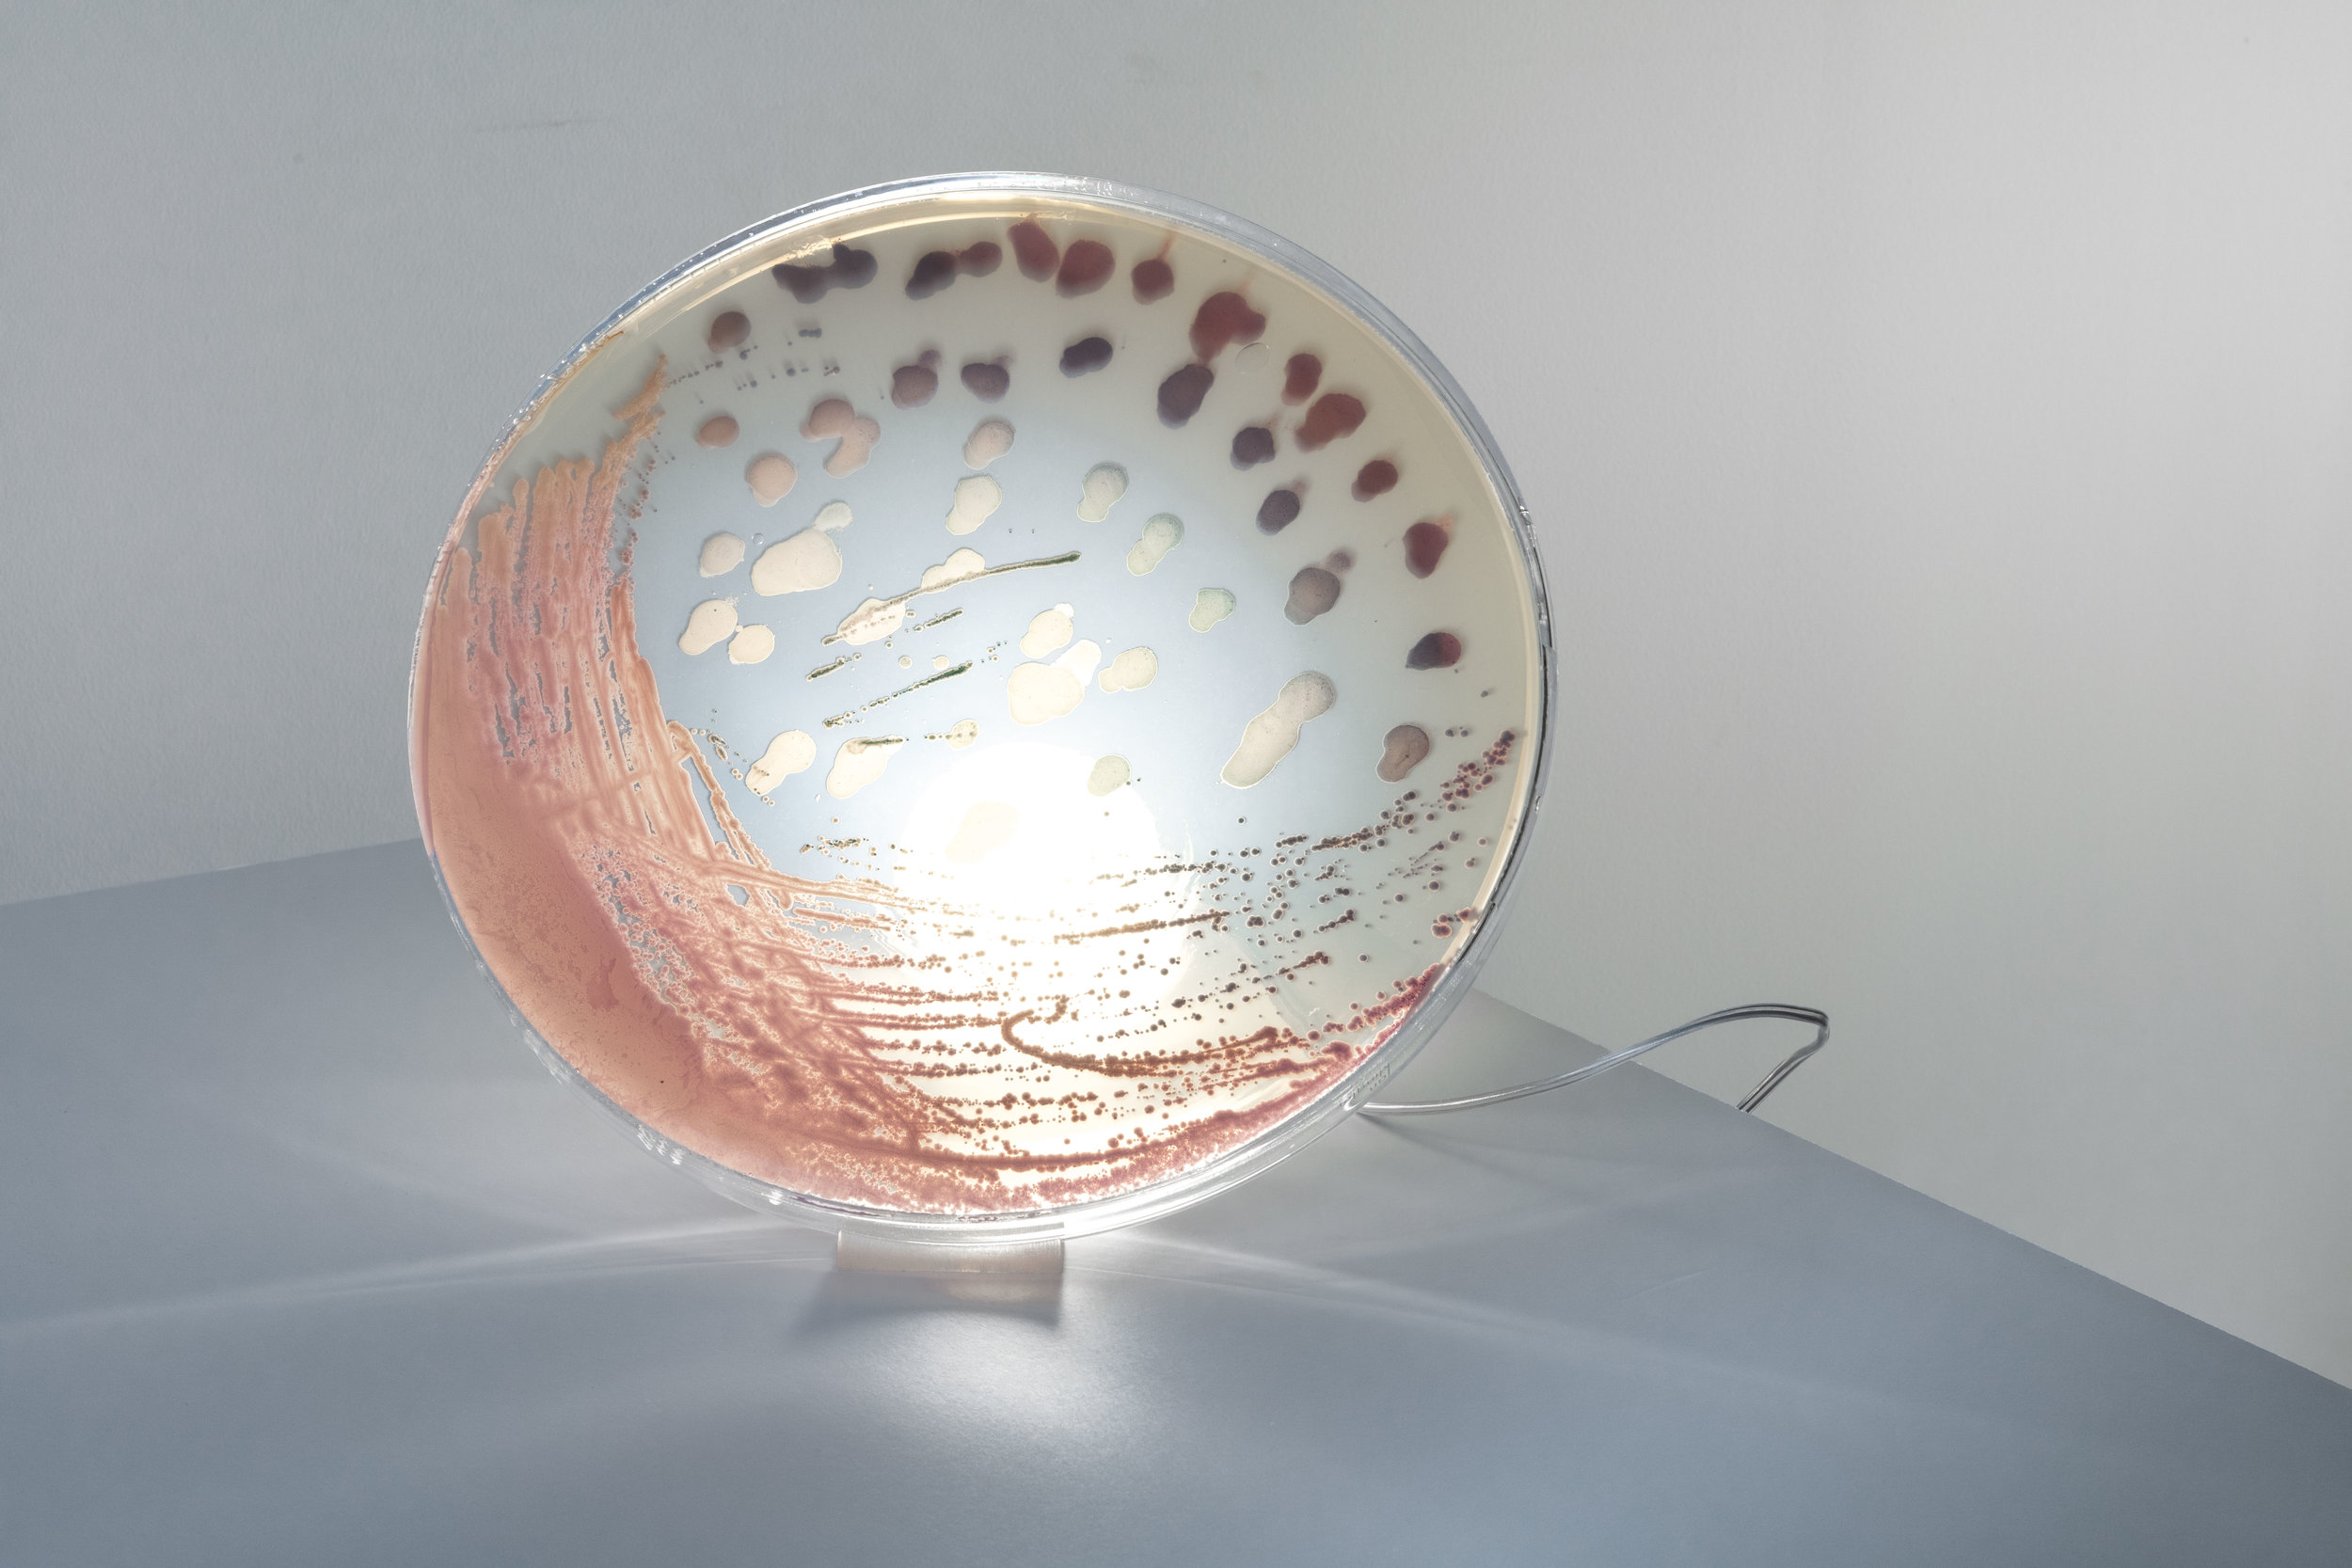 bacteria lamp — jan klingler designs